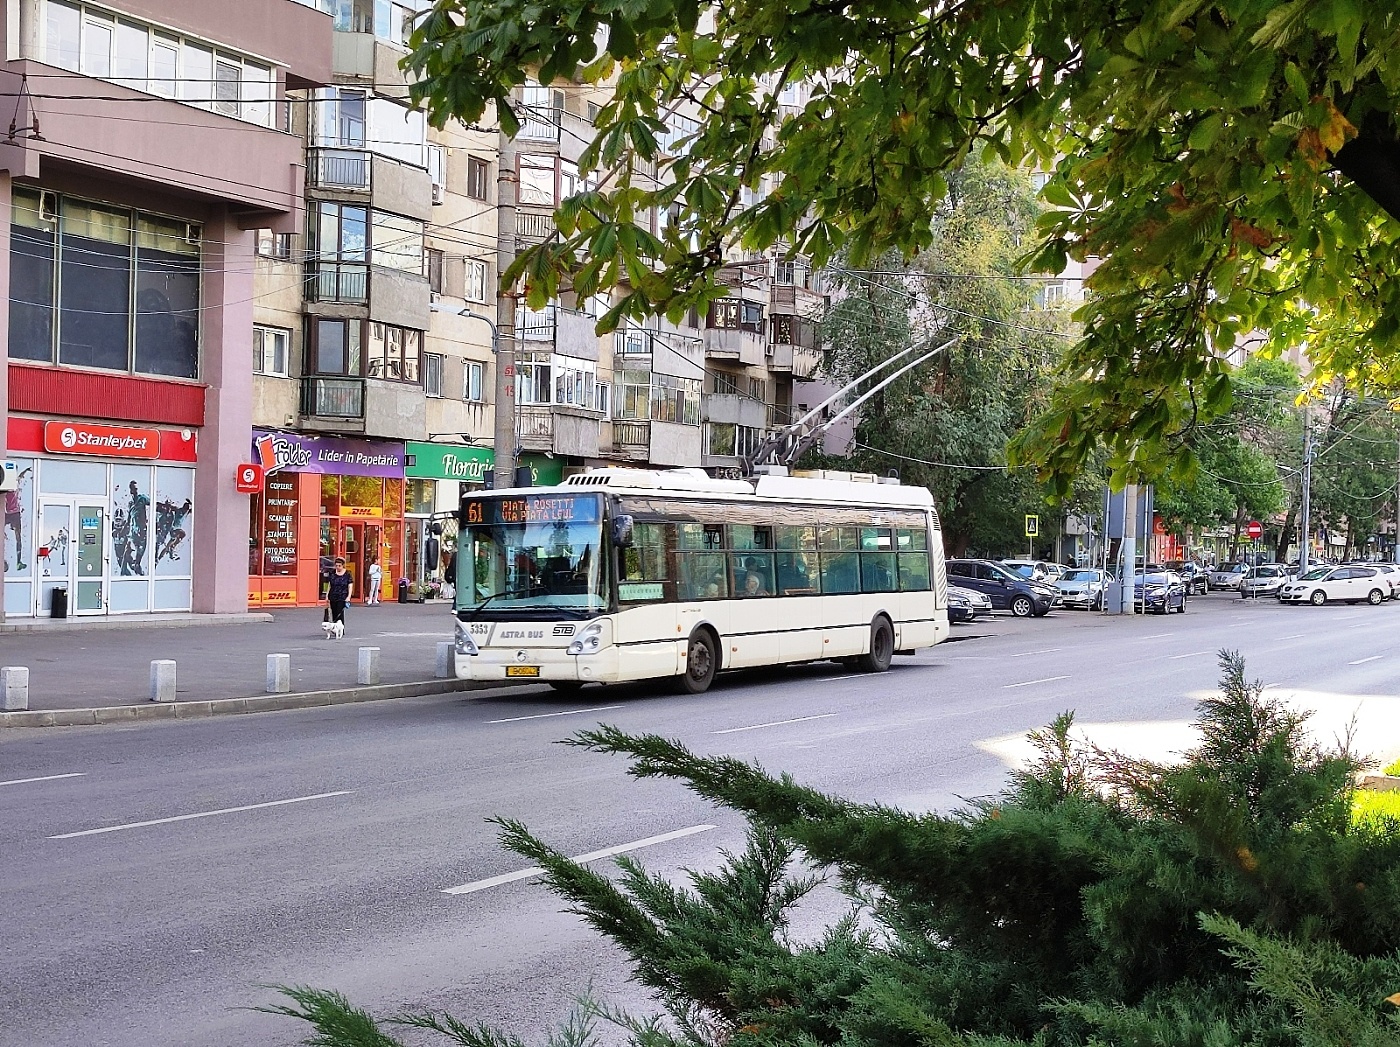 Irisbus Citelis 12T #5353